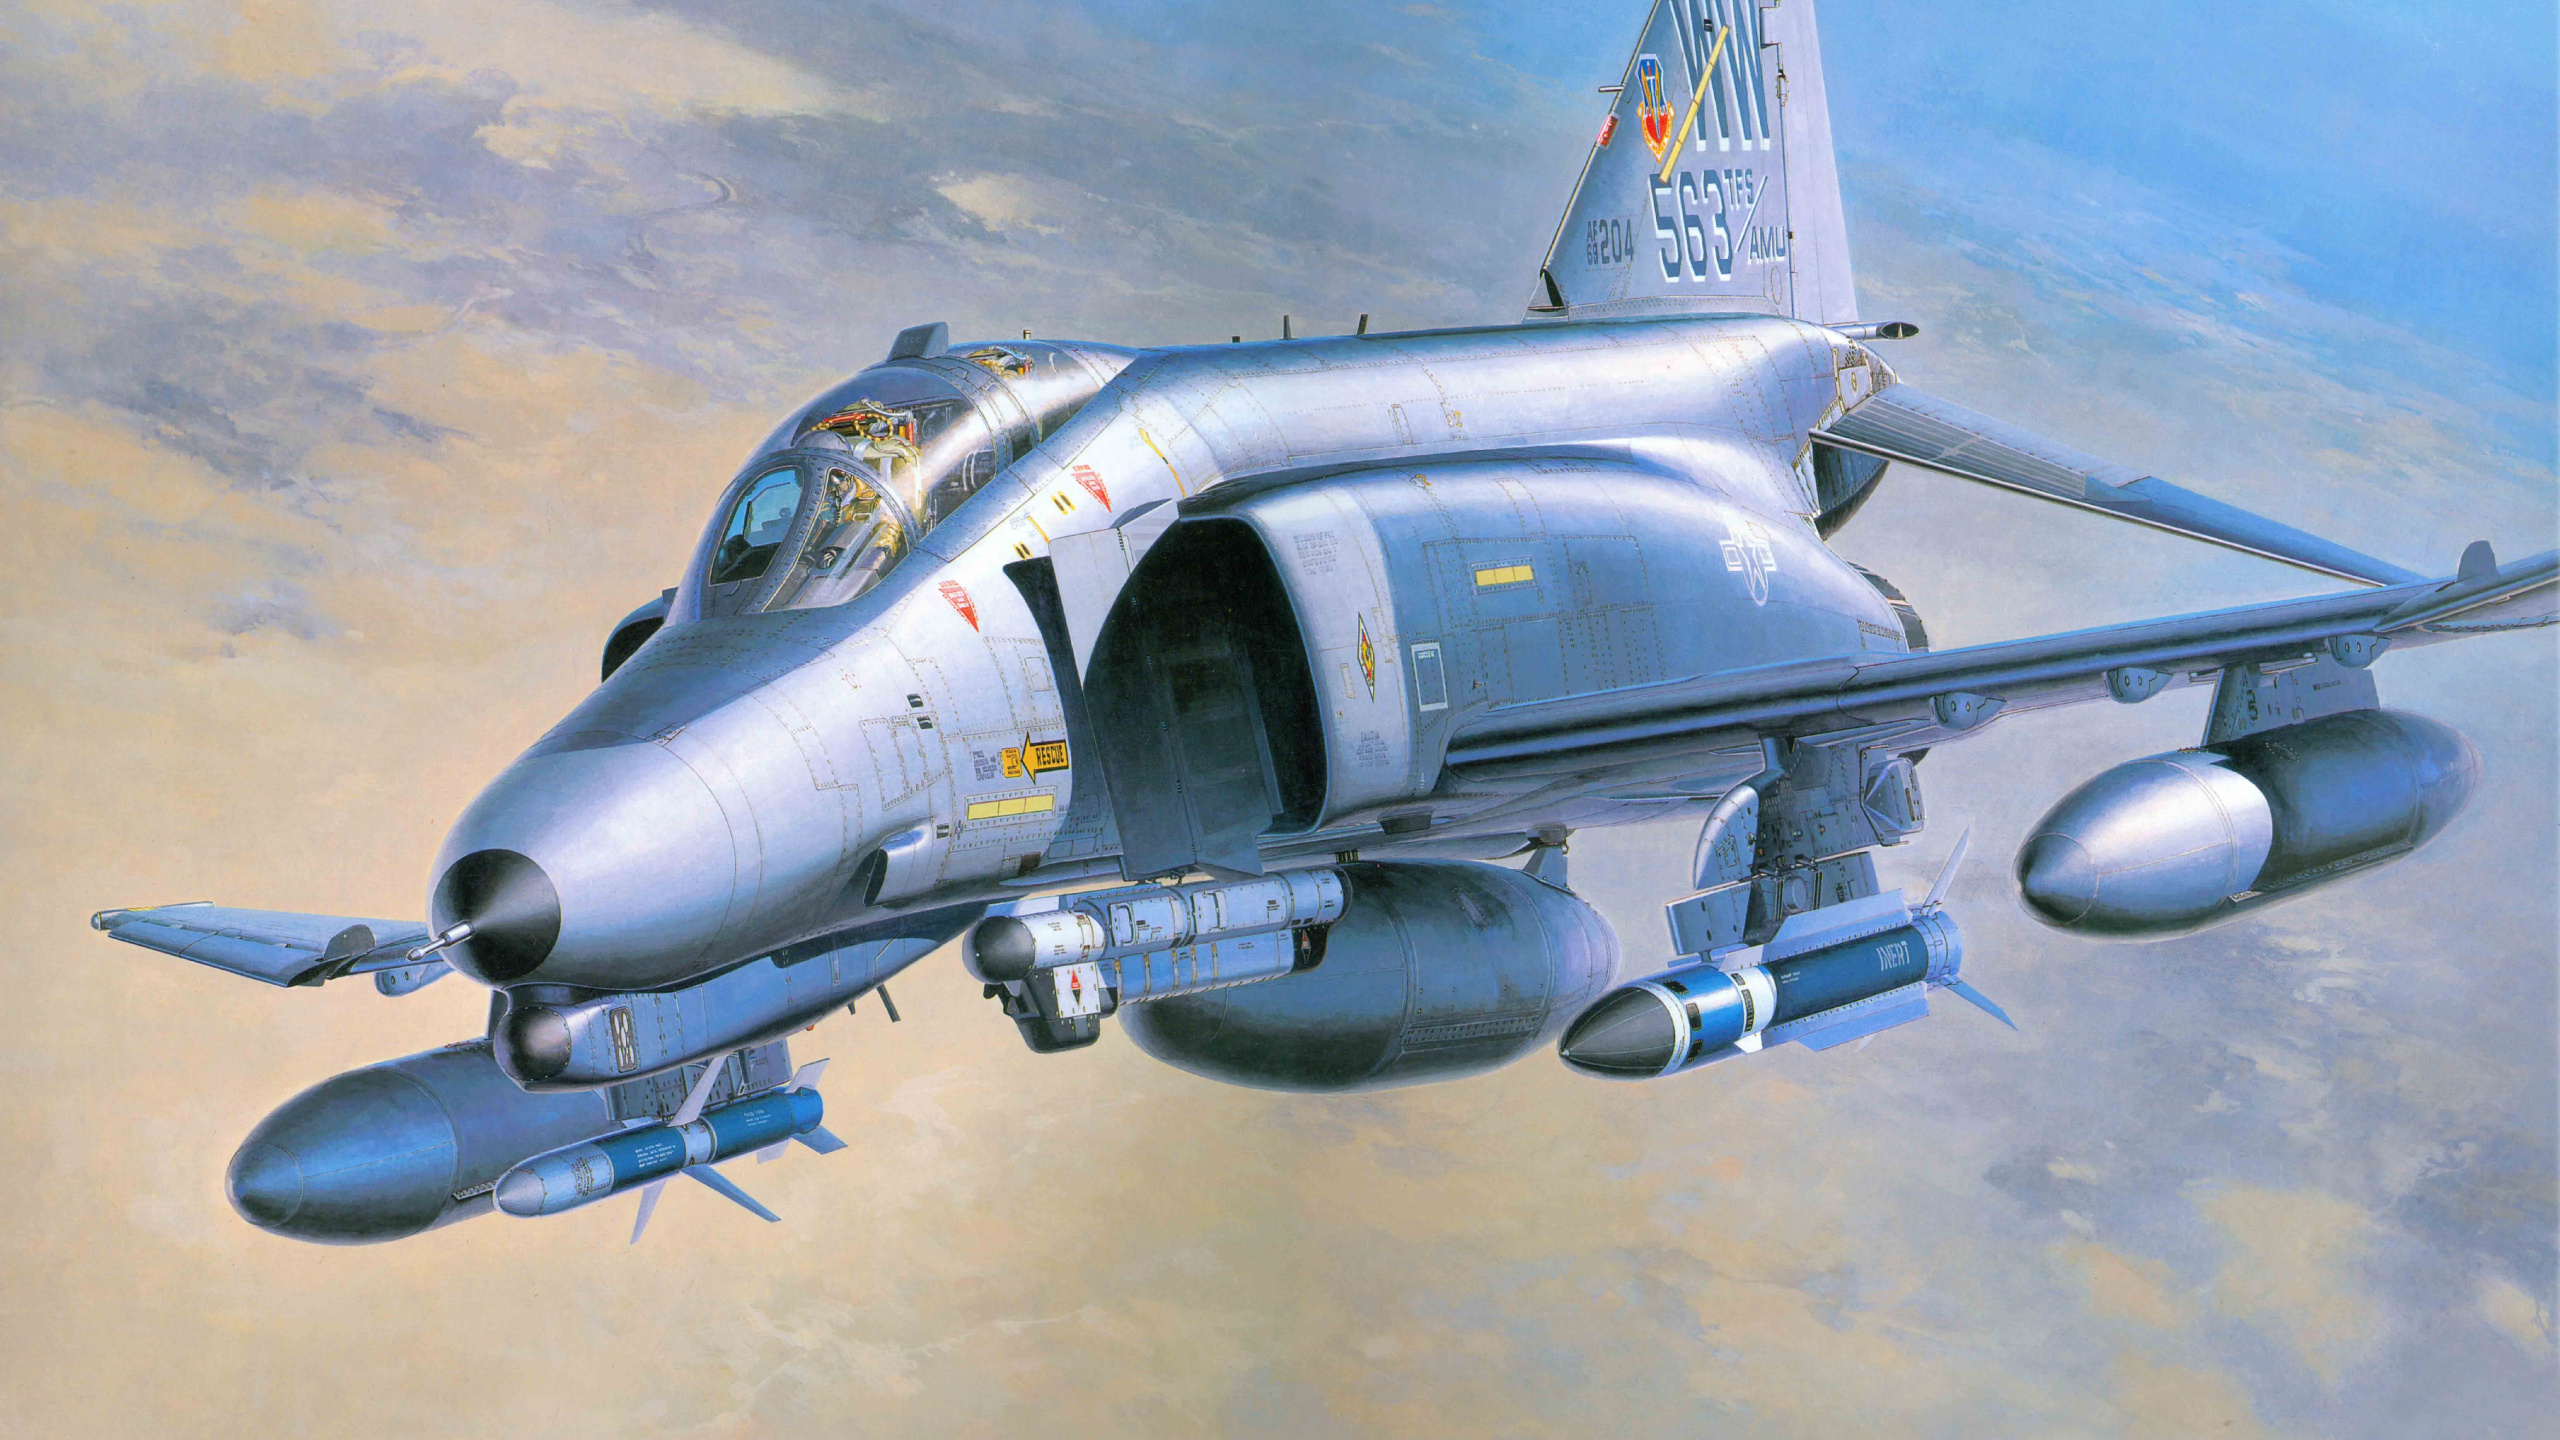 Grauer Kampfjet Tagsüber in Der Luft. Wallpaper in 2560x1440 Resolution